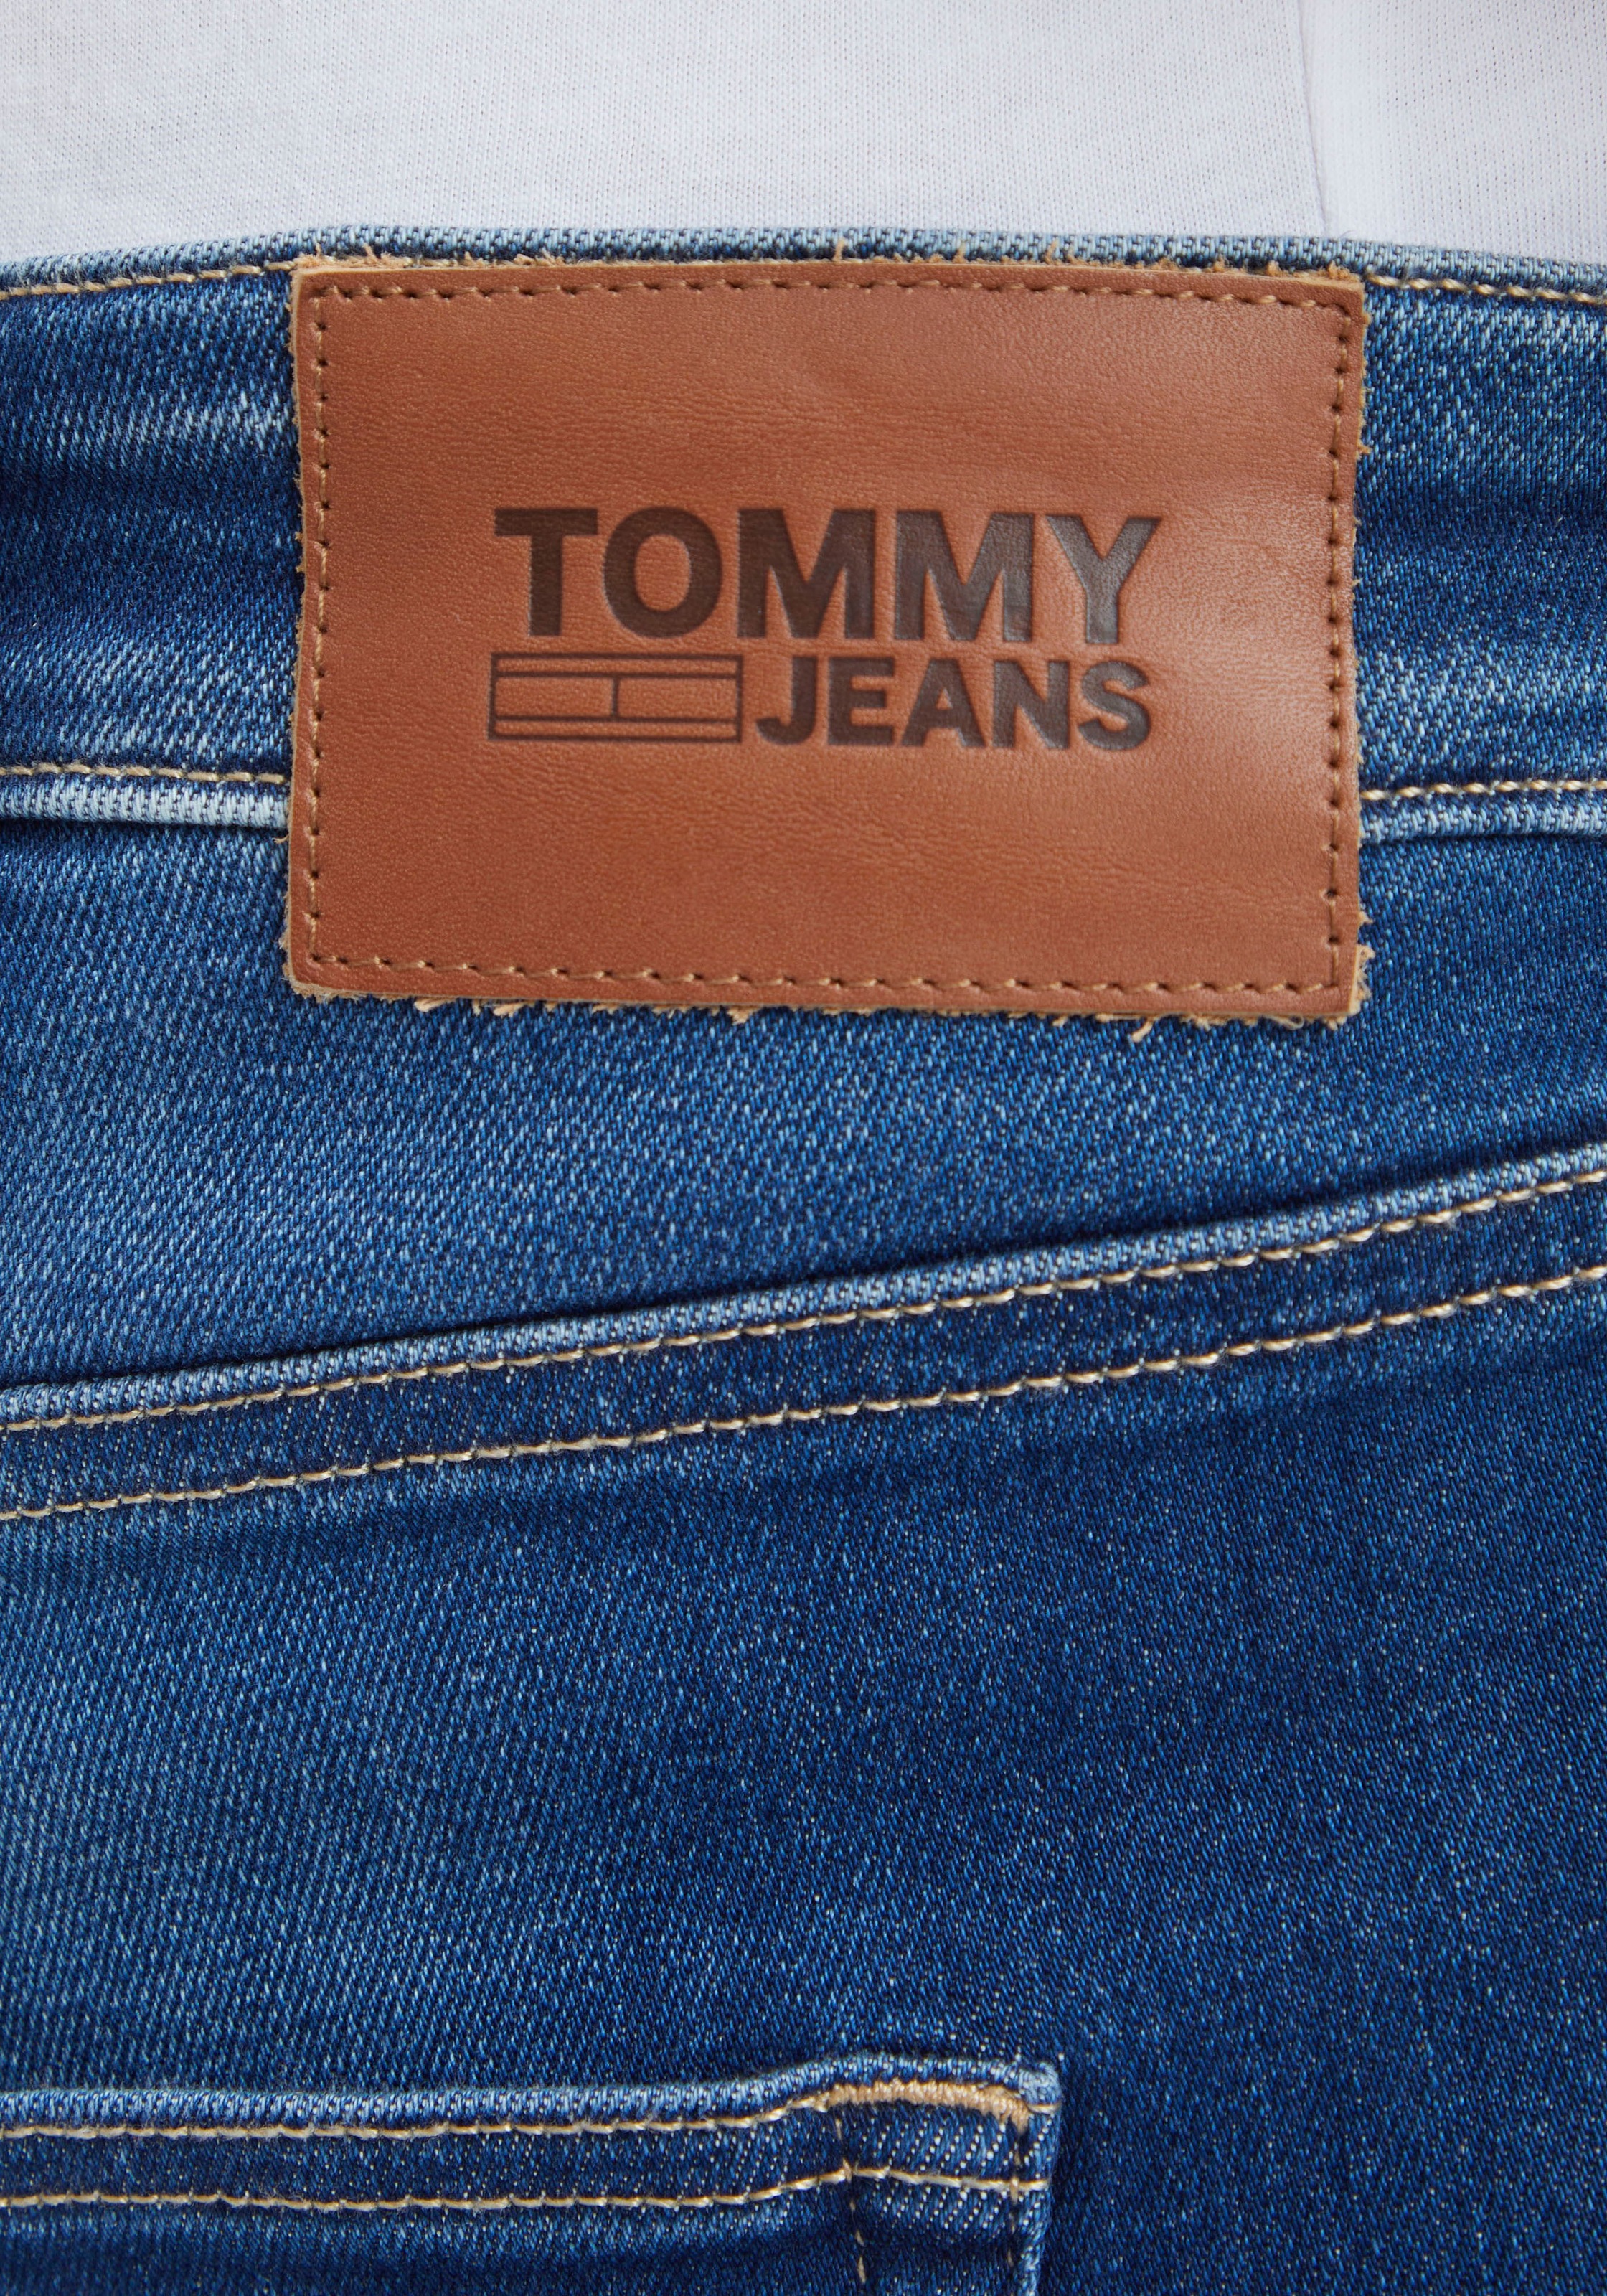 »SCANTON CE«, mit Jeans Tommy Tommy PLUS Jeans Slim-fit-Jeans ♕ Plus bei Nieten